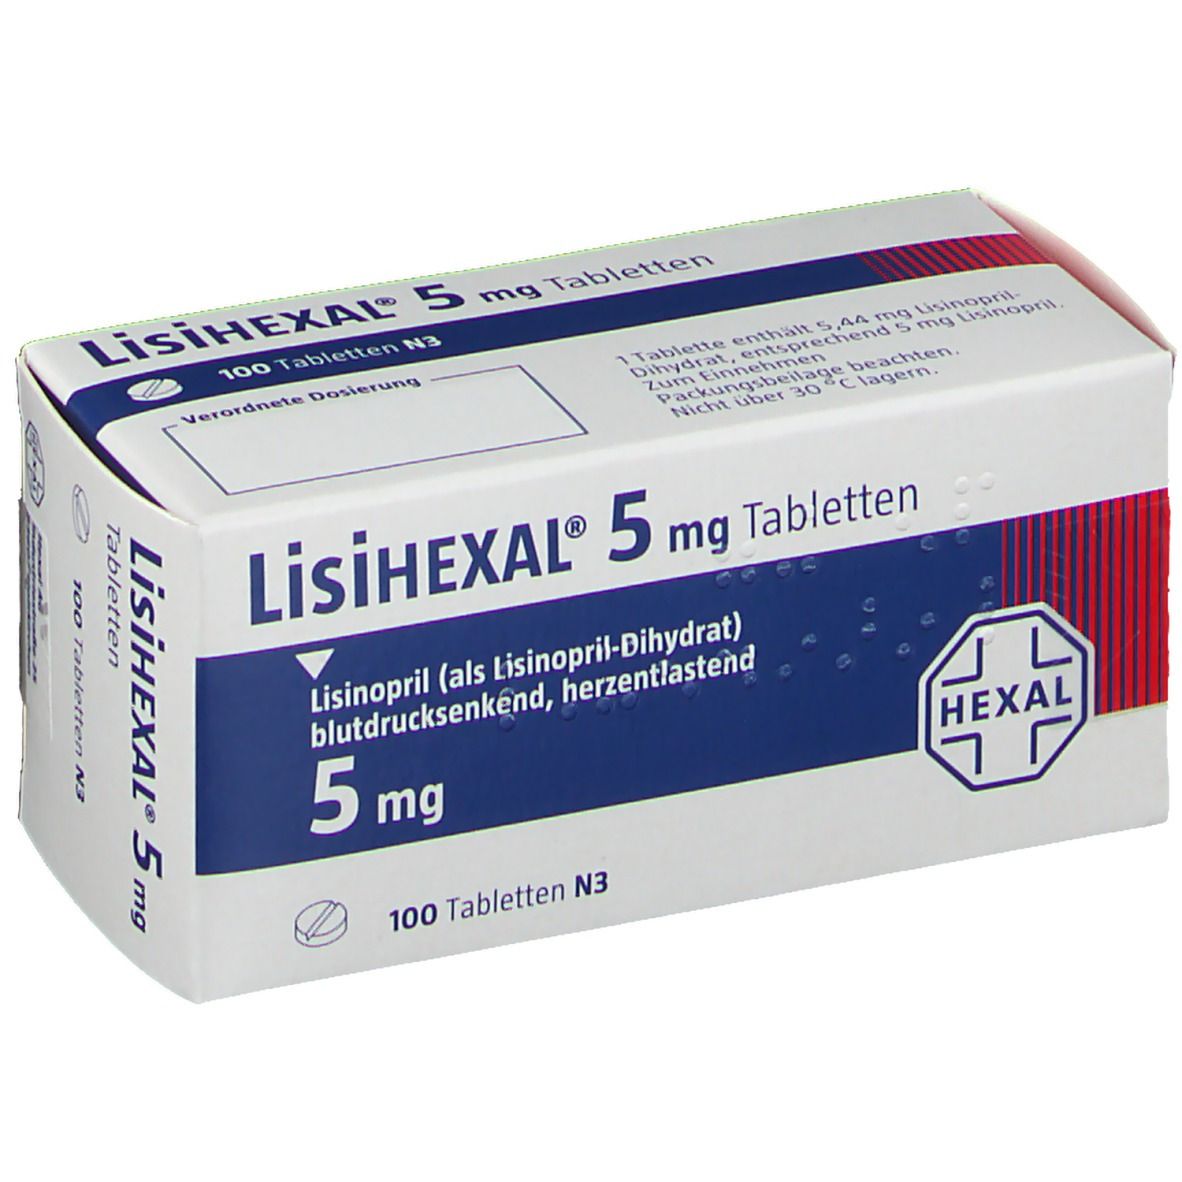 LisiHEXAL® 5 mg